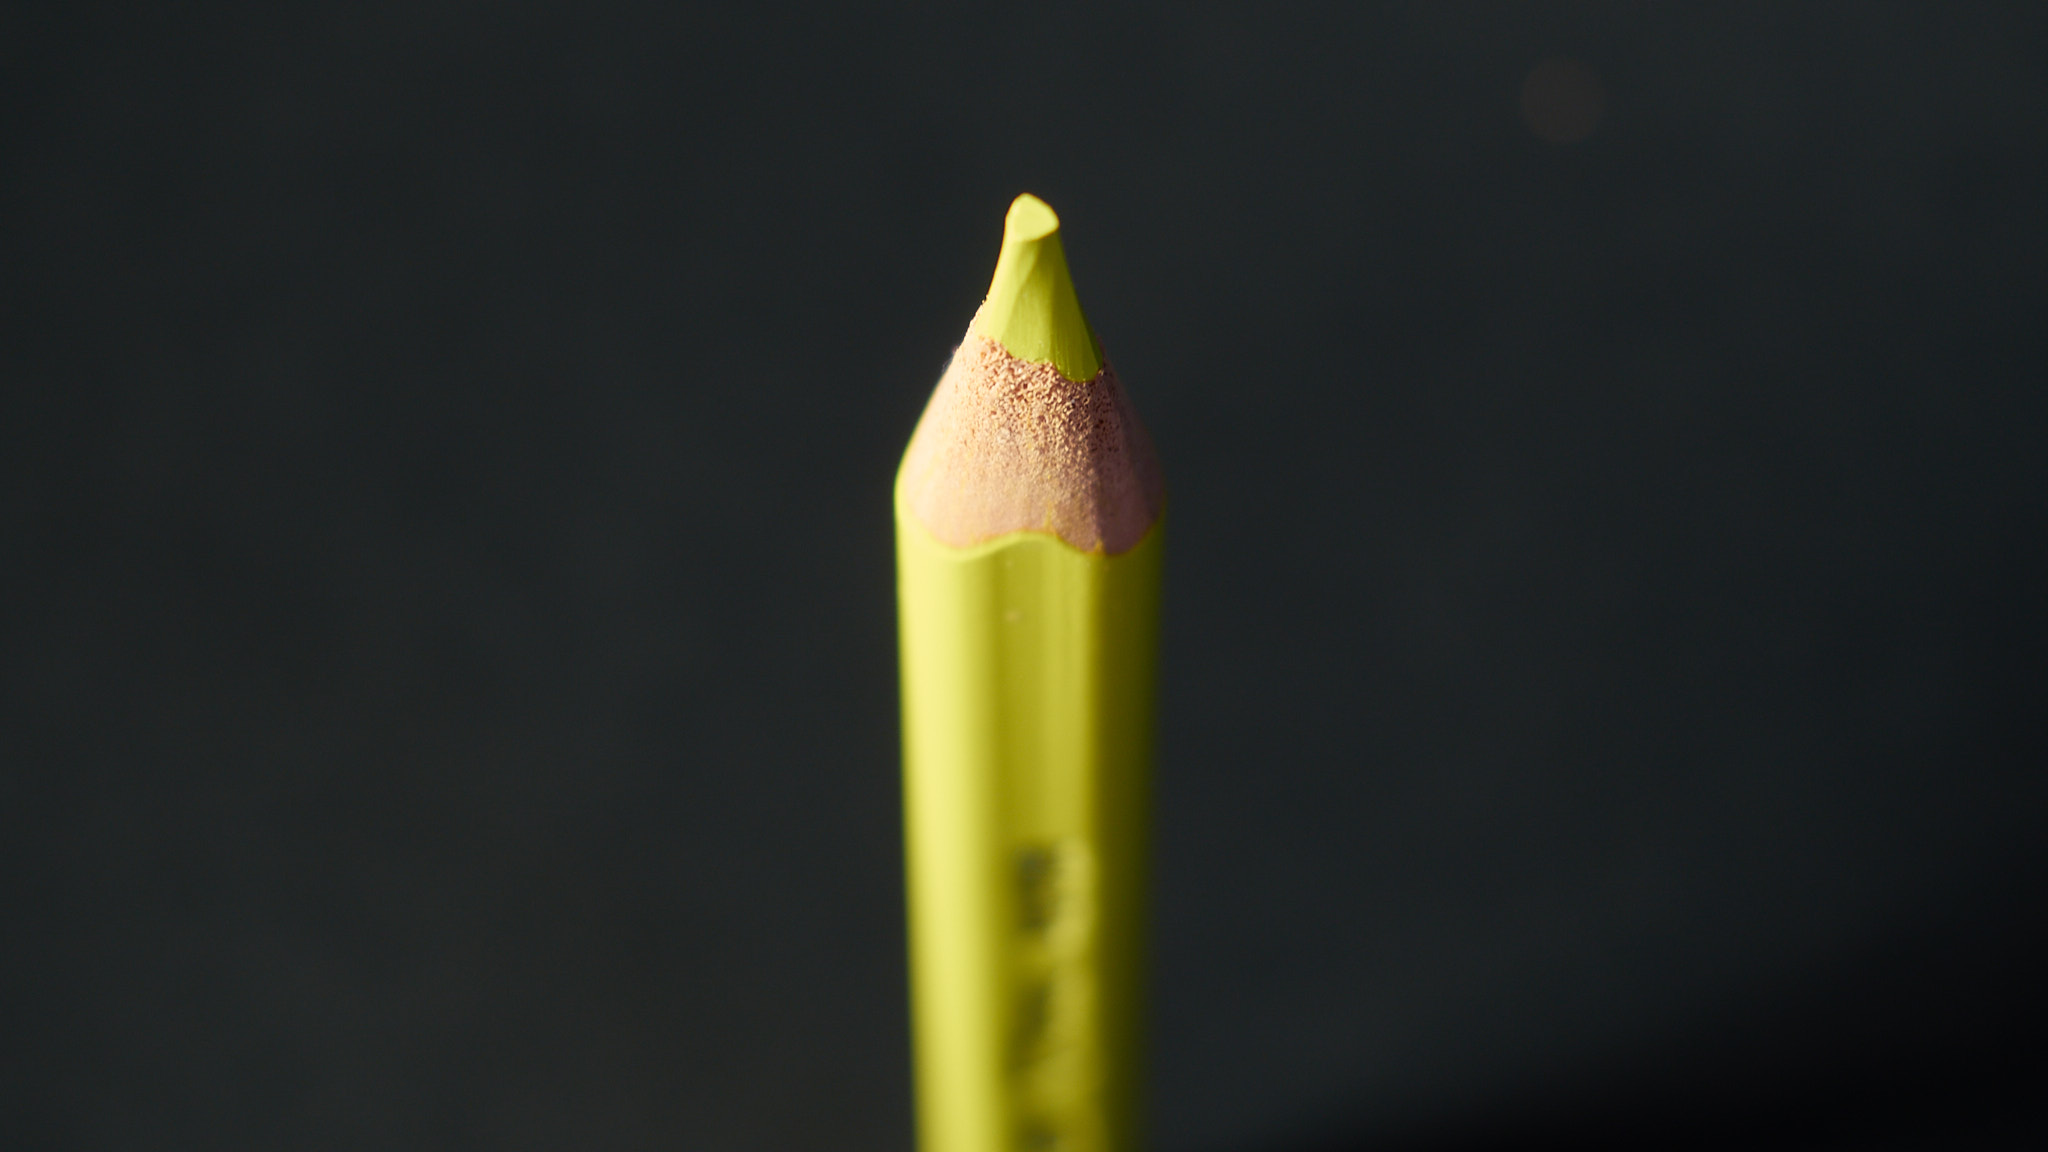 1312 Colored Pencils Study 11978-1v (20. Sept. 2013)